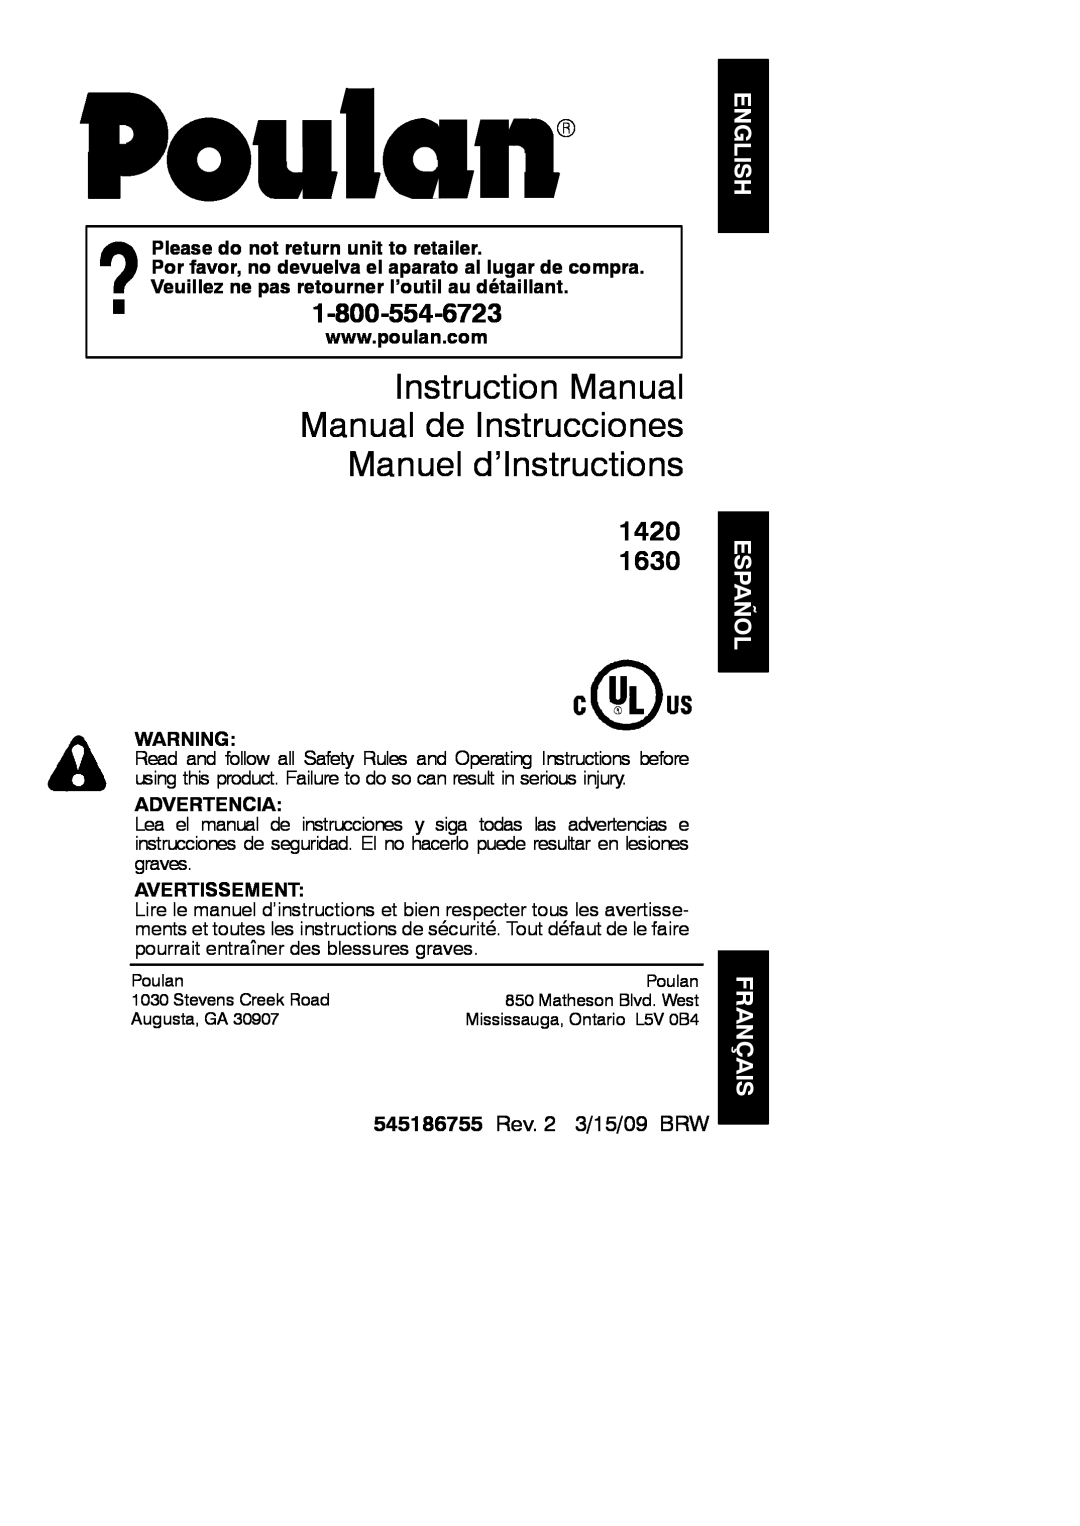 Poulan instruction manual Español, Français, 1420, 545186755 Rev. 2 3/15/09 BRW, Please do not return unit to retailer 